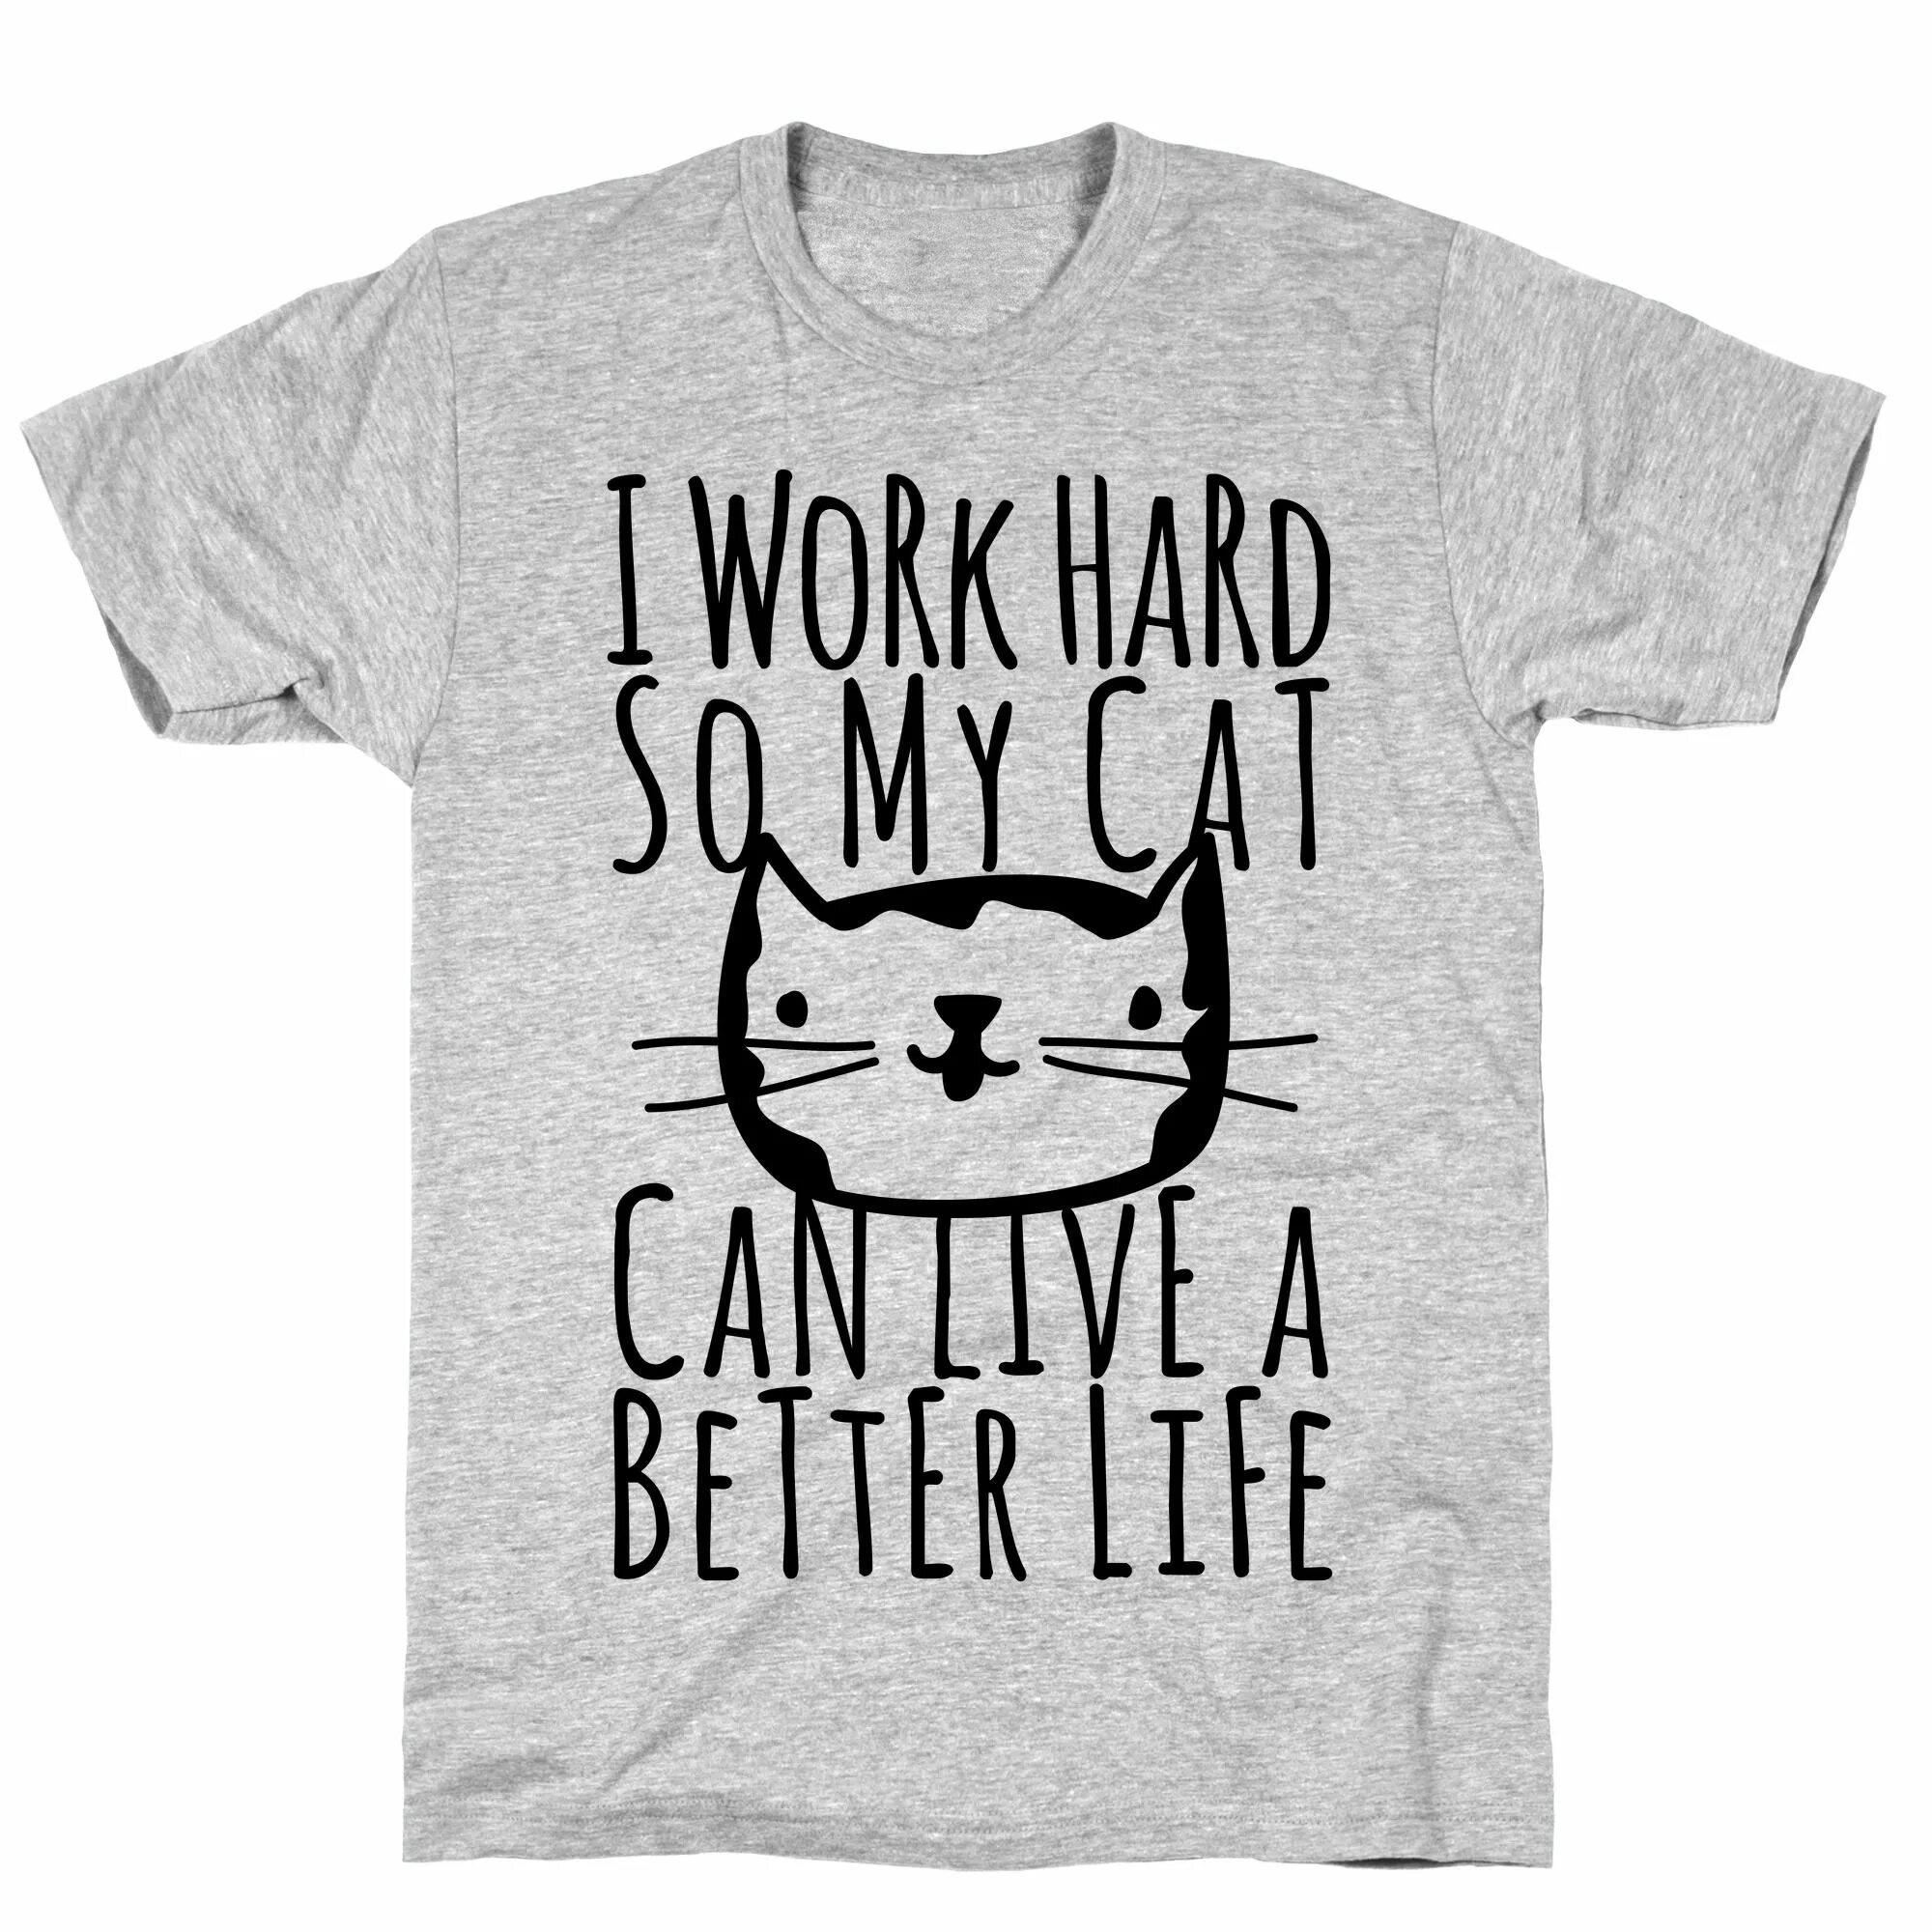 It s my cat. I Cat Cats футболка. Футболка сильная и независимая. Котик Хард ворк. Футболки с кошками котами.